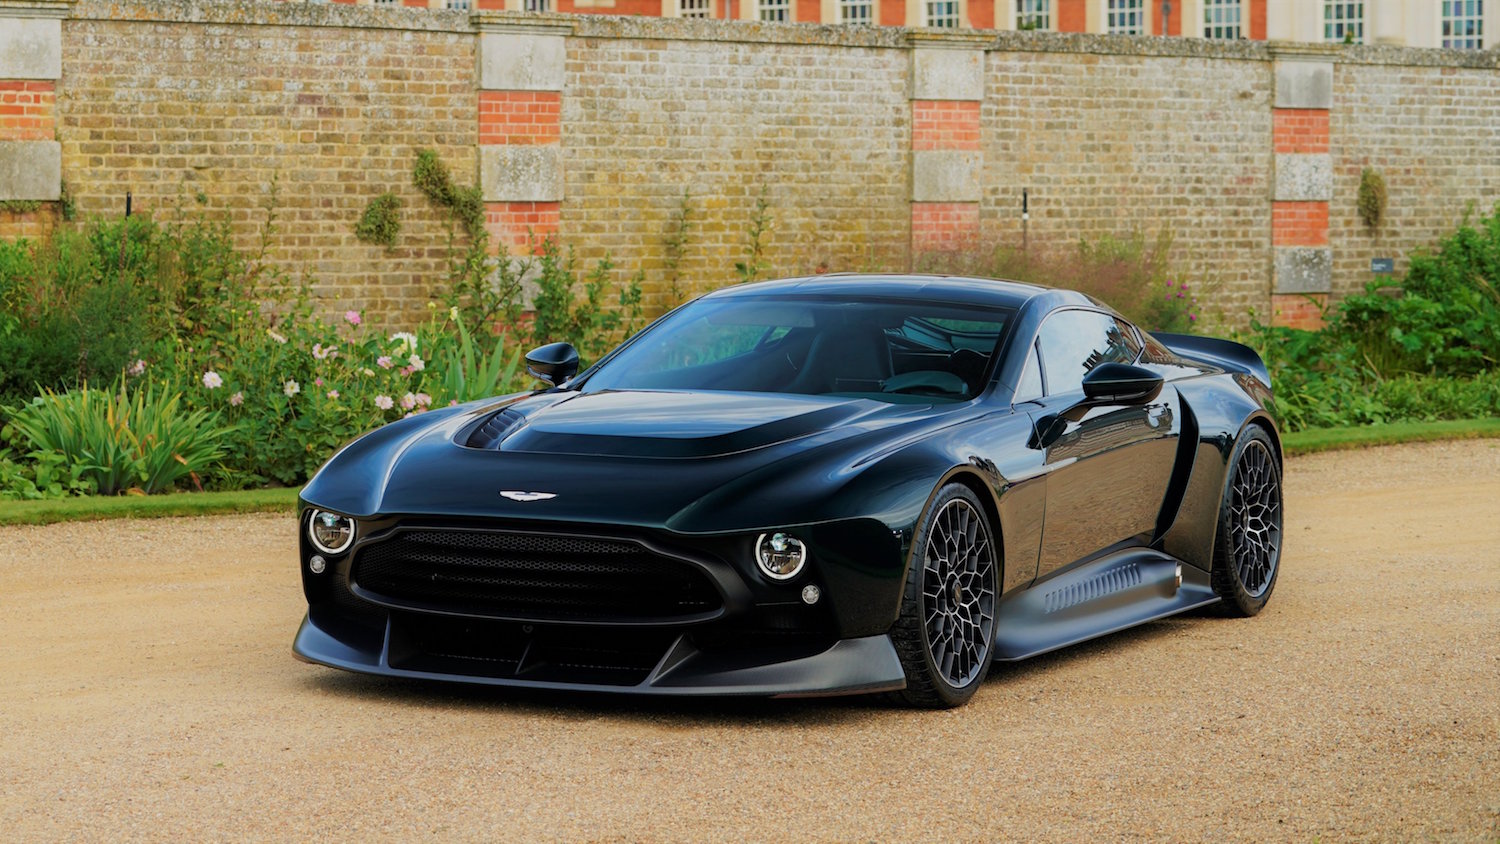 840 pk sterke Aston Martin Victor is de perfecte Bliksemafleider - DRIVR